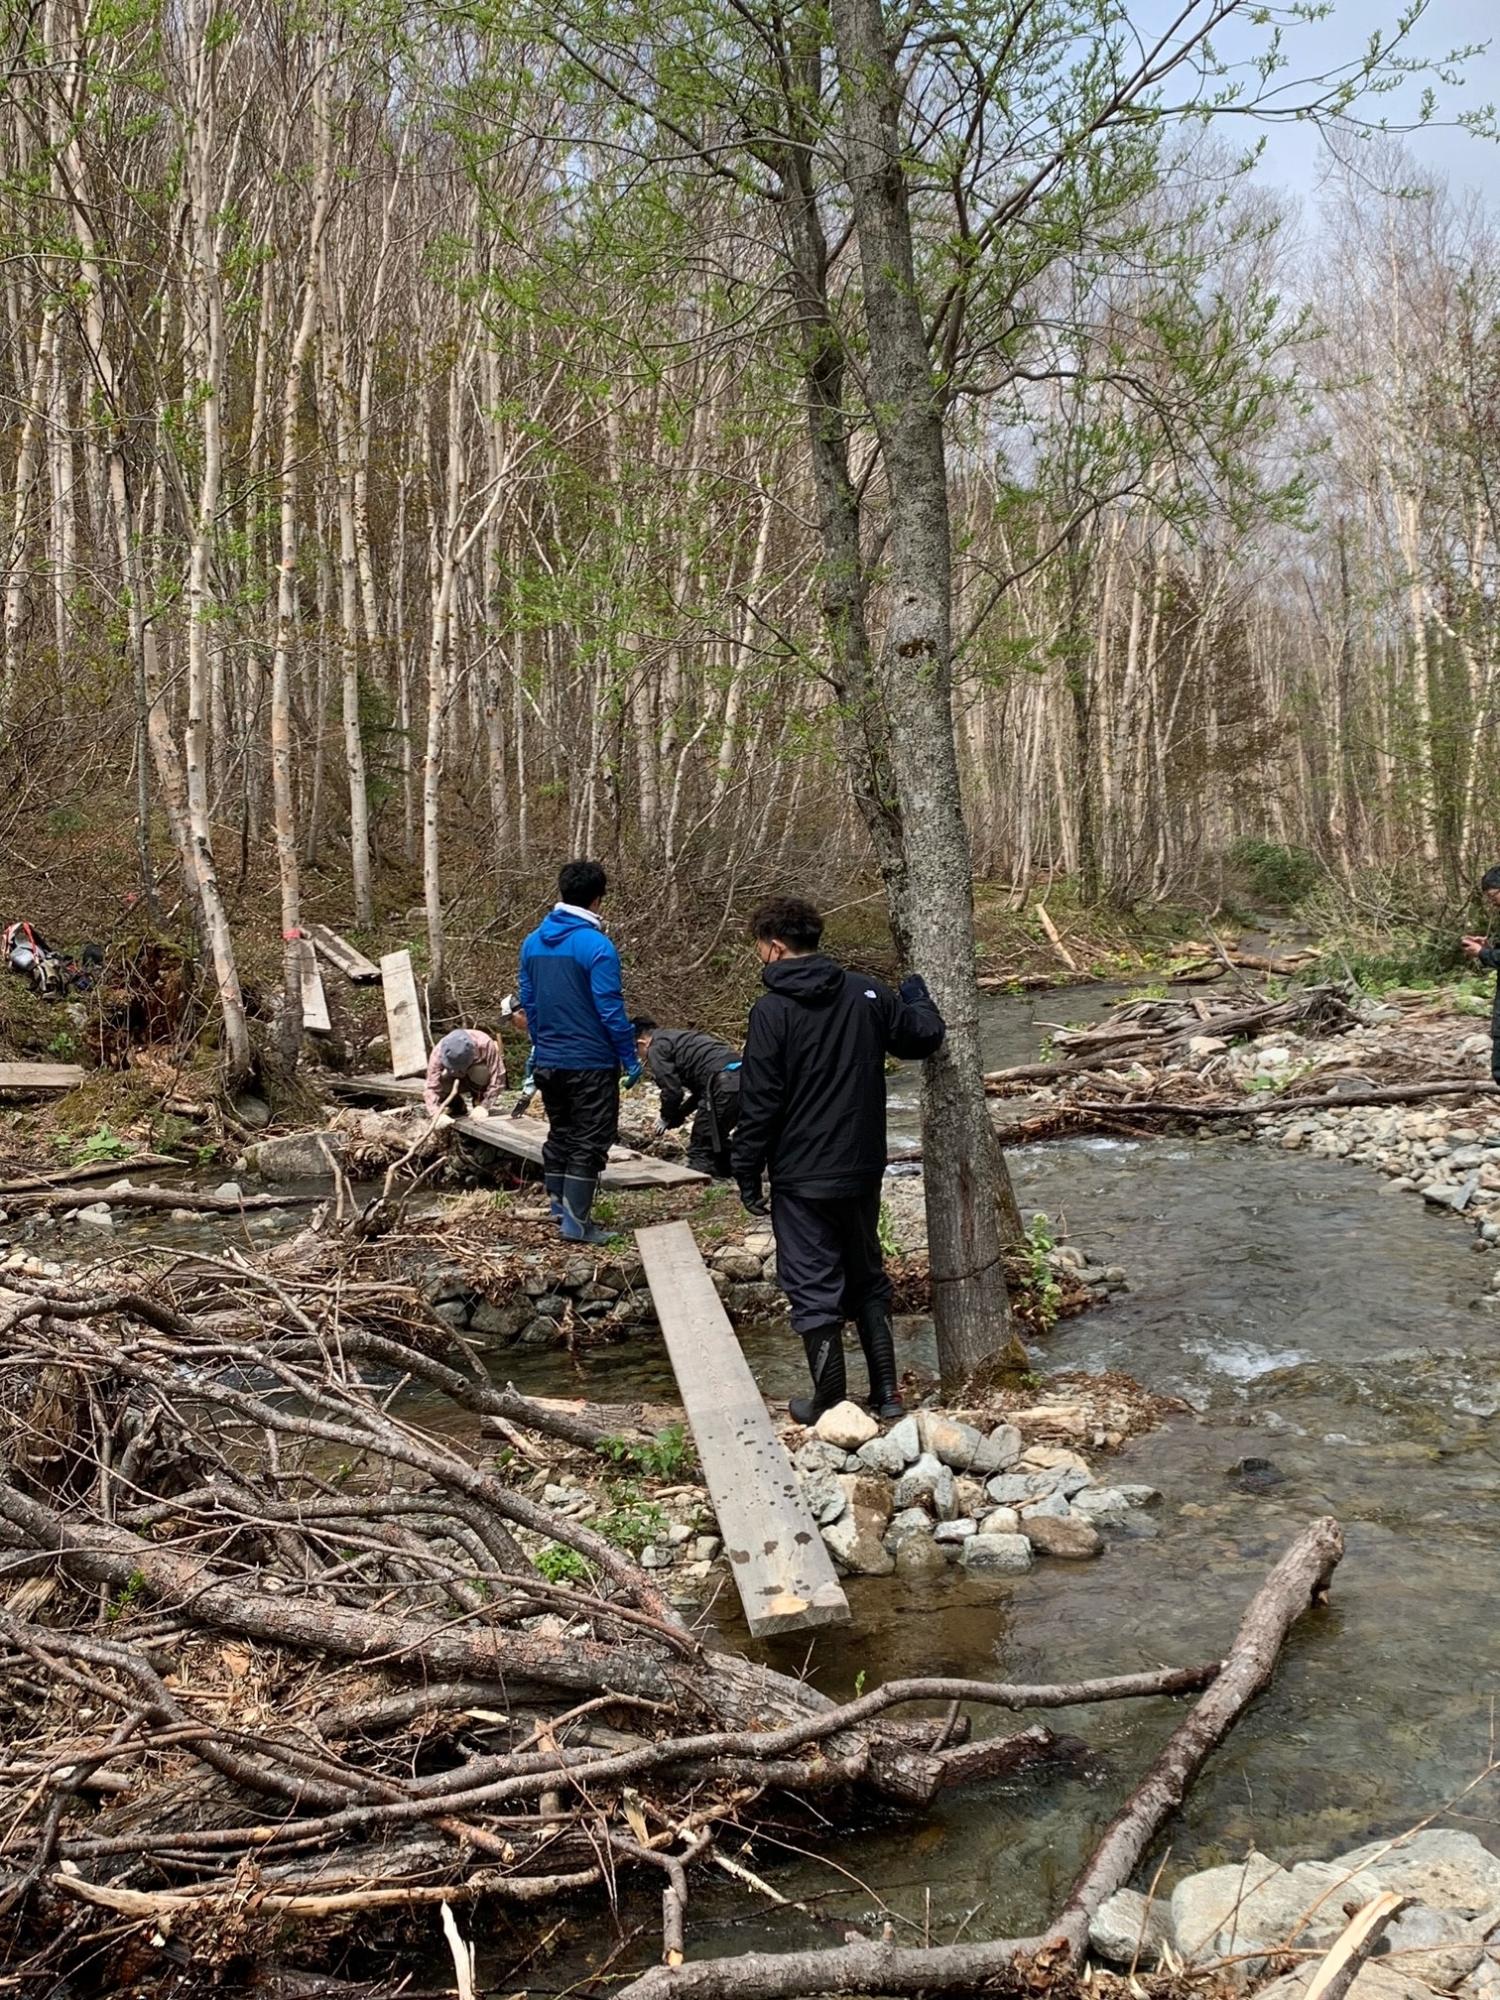 山中の小川で板を組み合わせて橋を作る作業をしている紙谷隊員と朝日支所職員の方々の写真